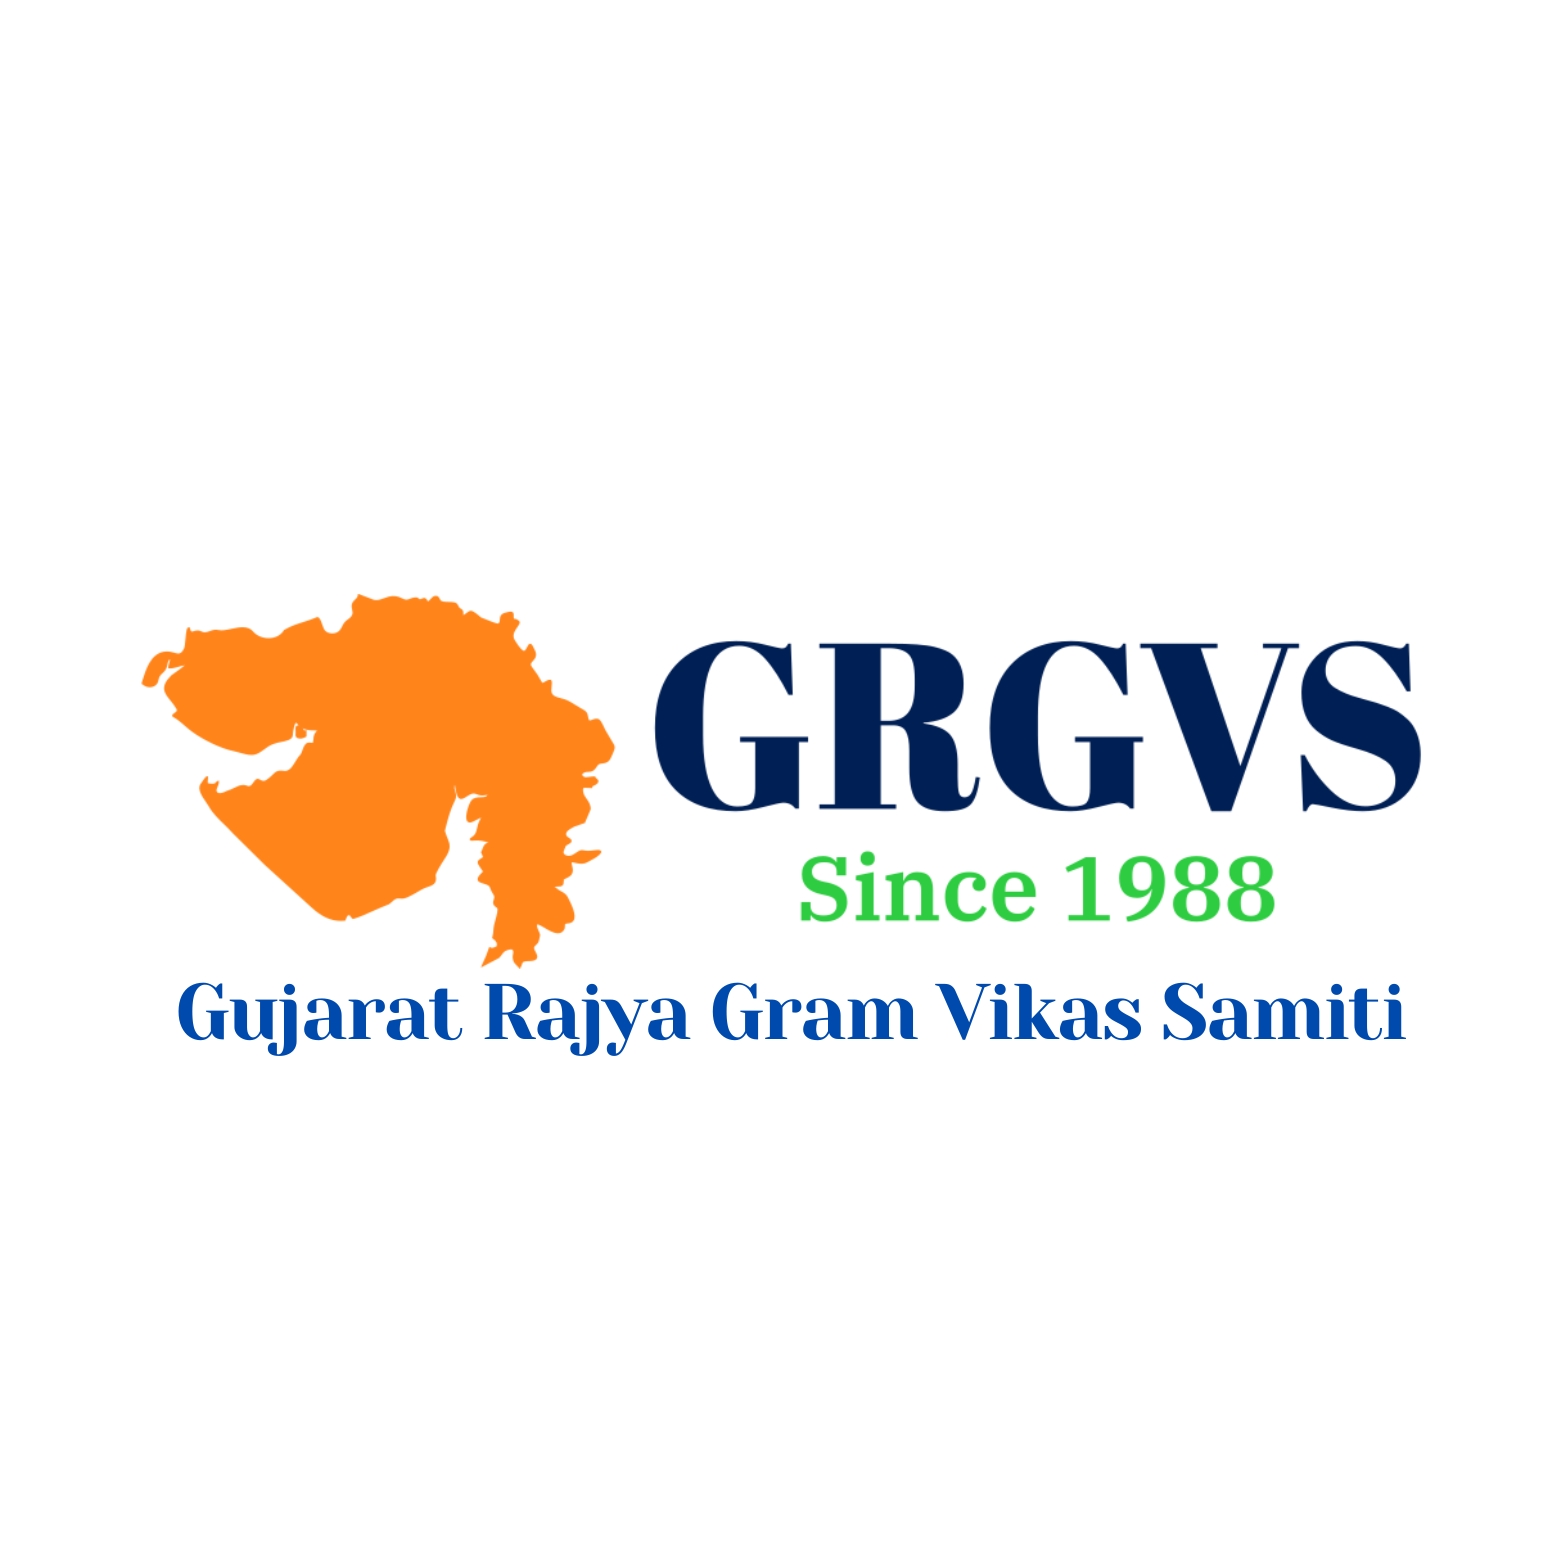 Gujarat Rajya Gram Vikas Samiti (GRGVS)